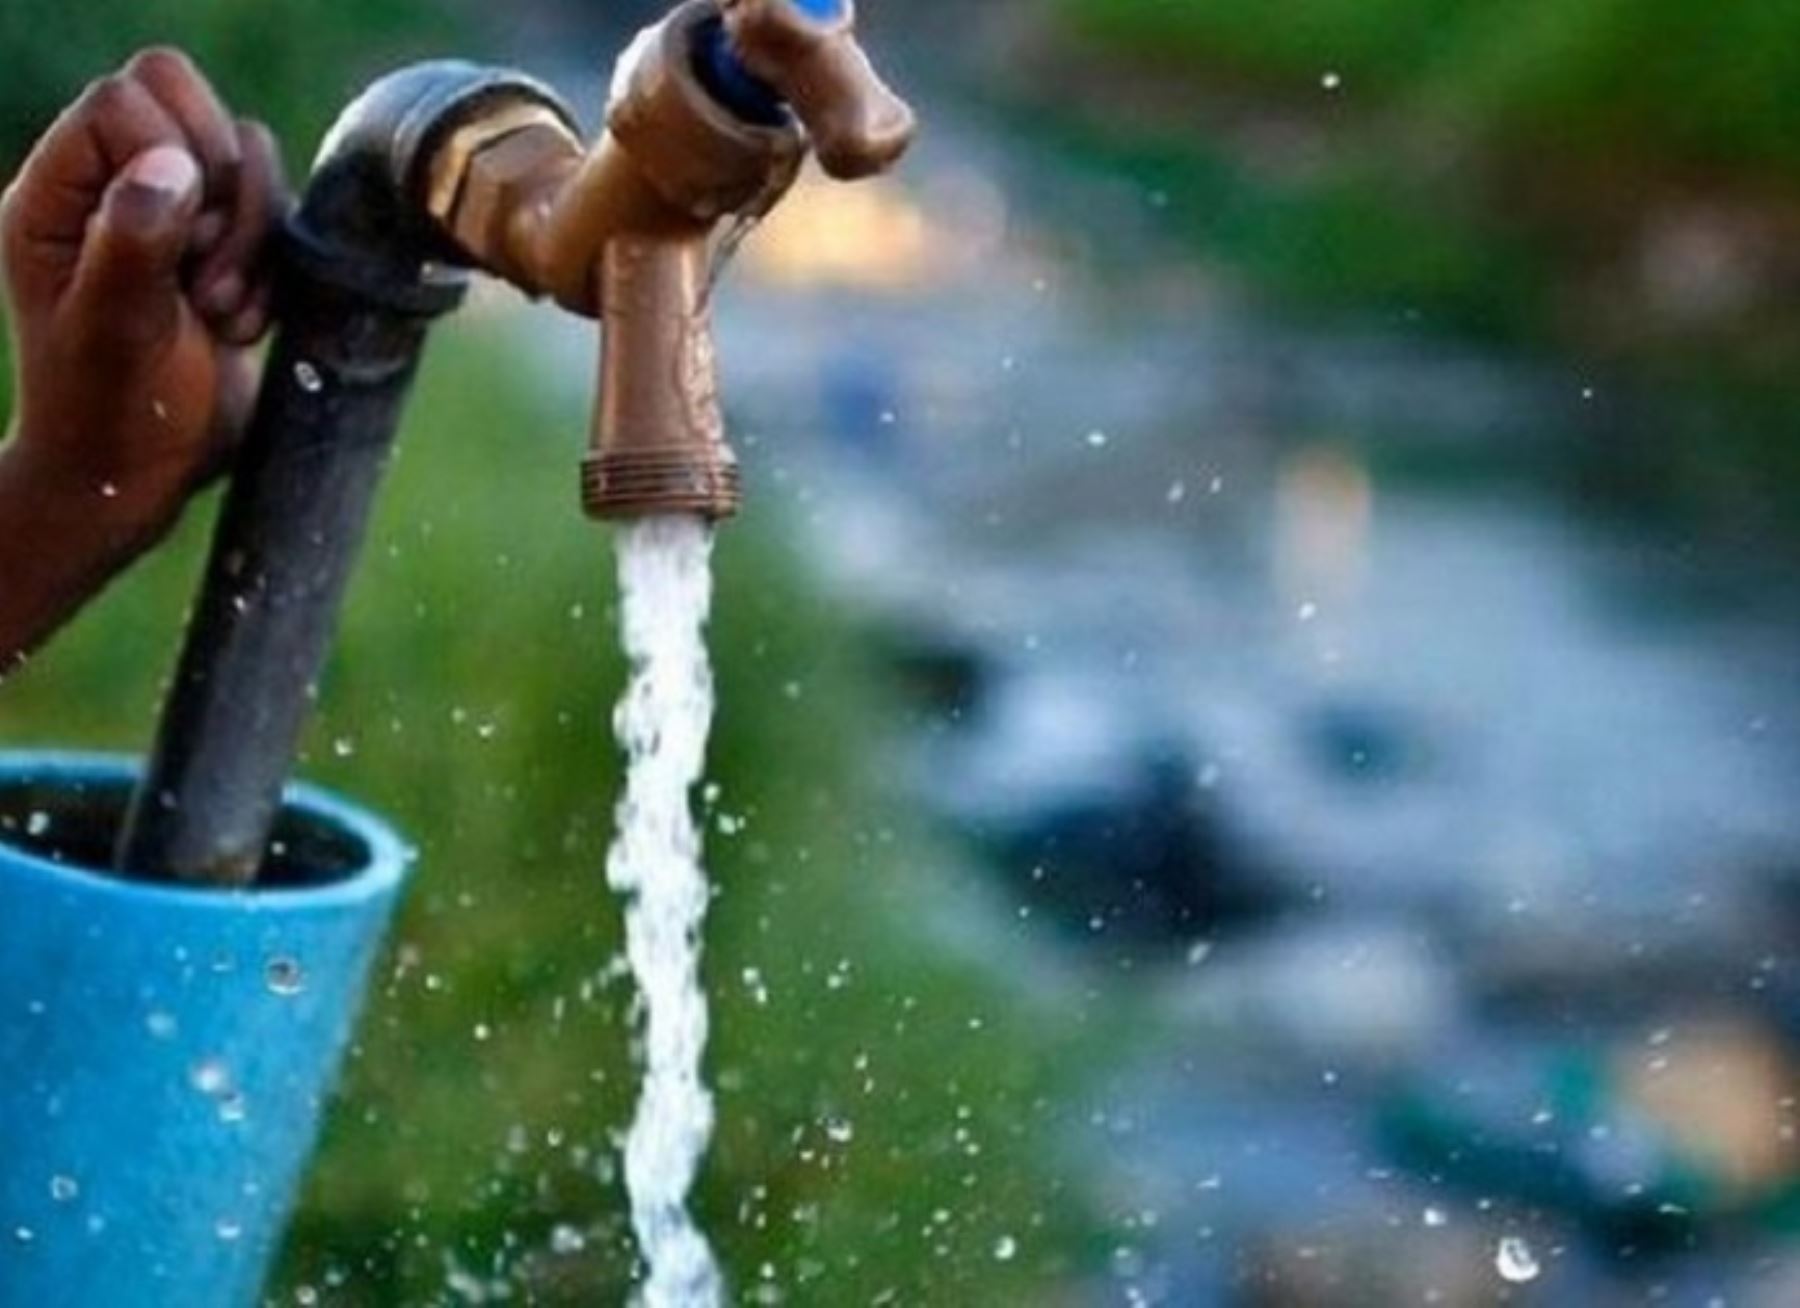 Más de 150,000 personas se beneficiarán con ejecución del megaproyecto de agua potable que beneficiará a la ciudad de Tarapoto, región San Martín.